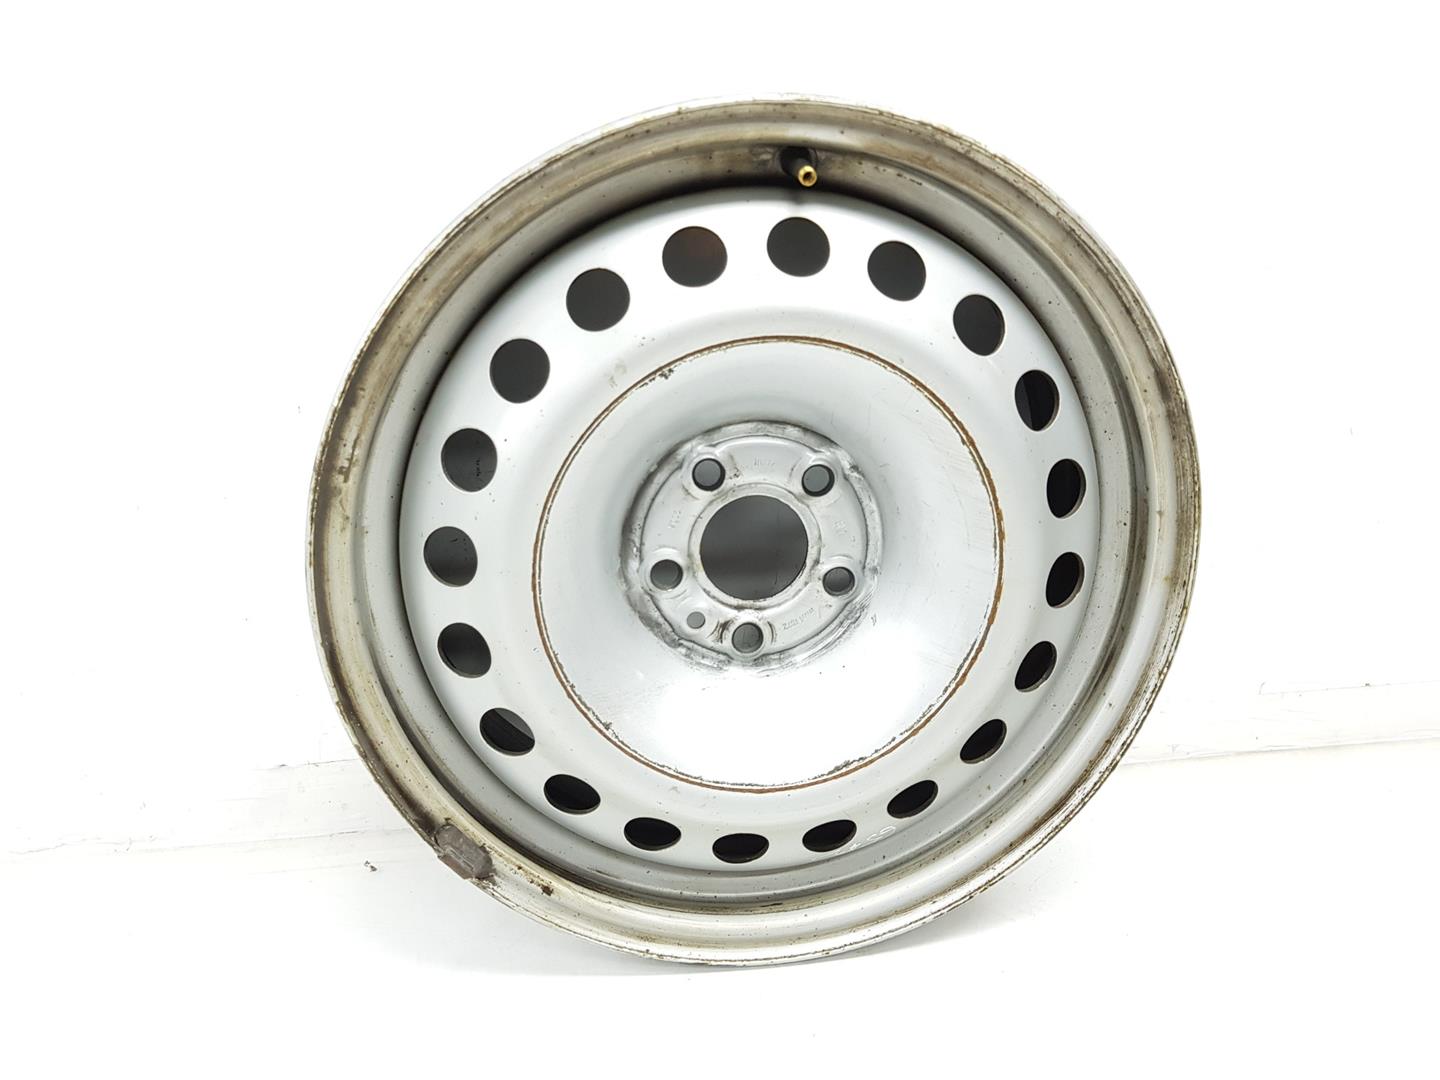 OPEL Combo D (2011-2020) Wheel 95518224, 6JX16, 16PULGADAS 24220535